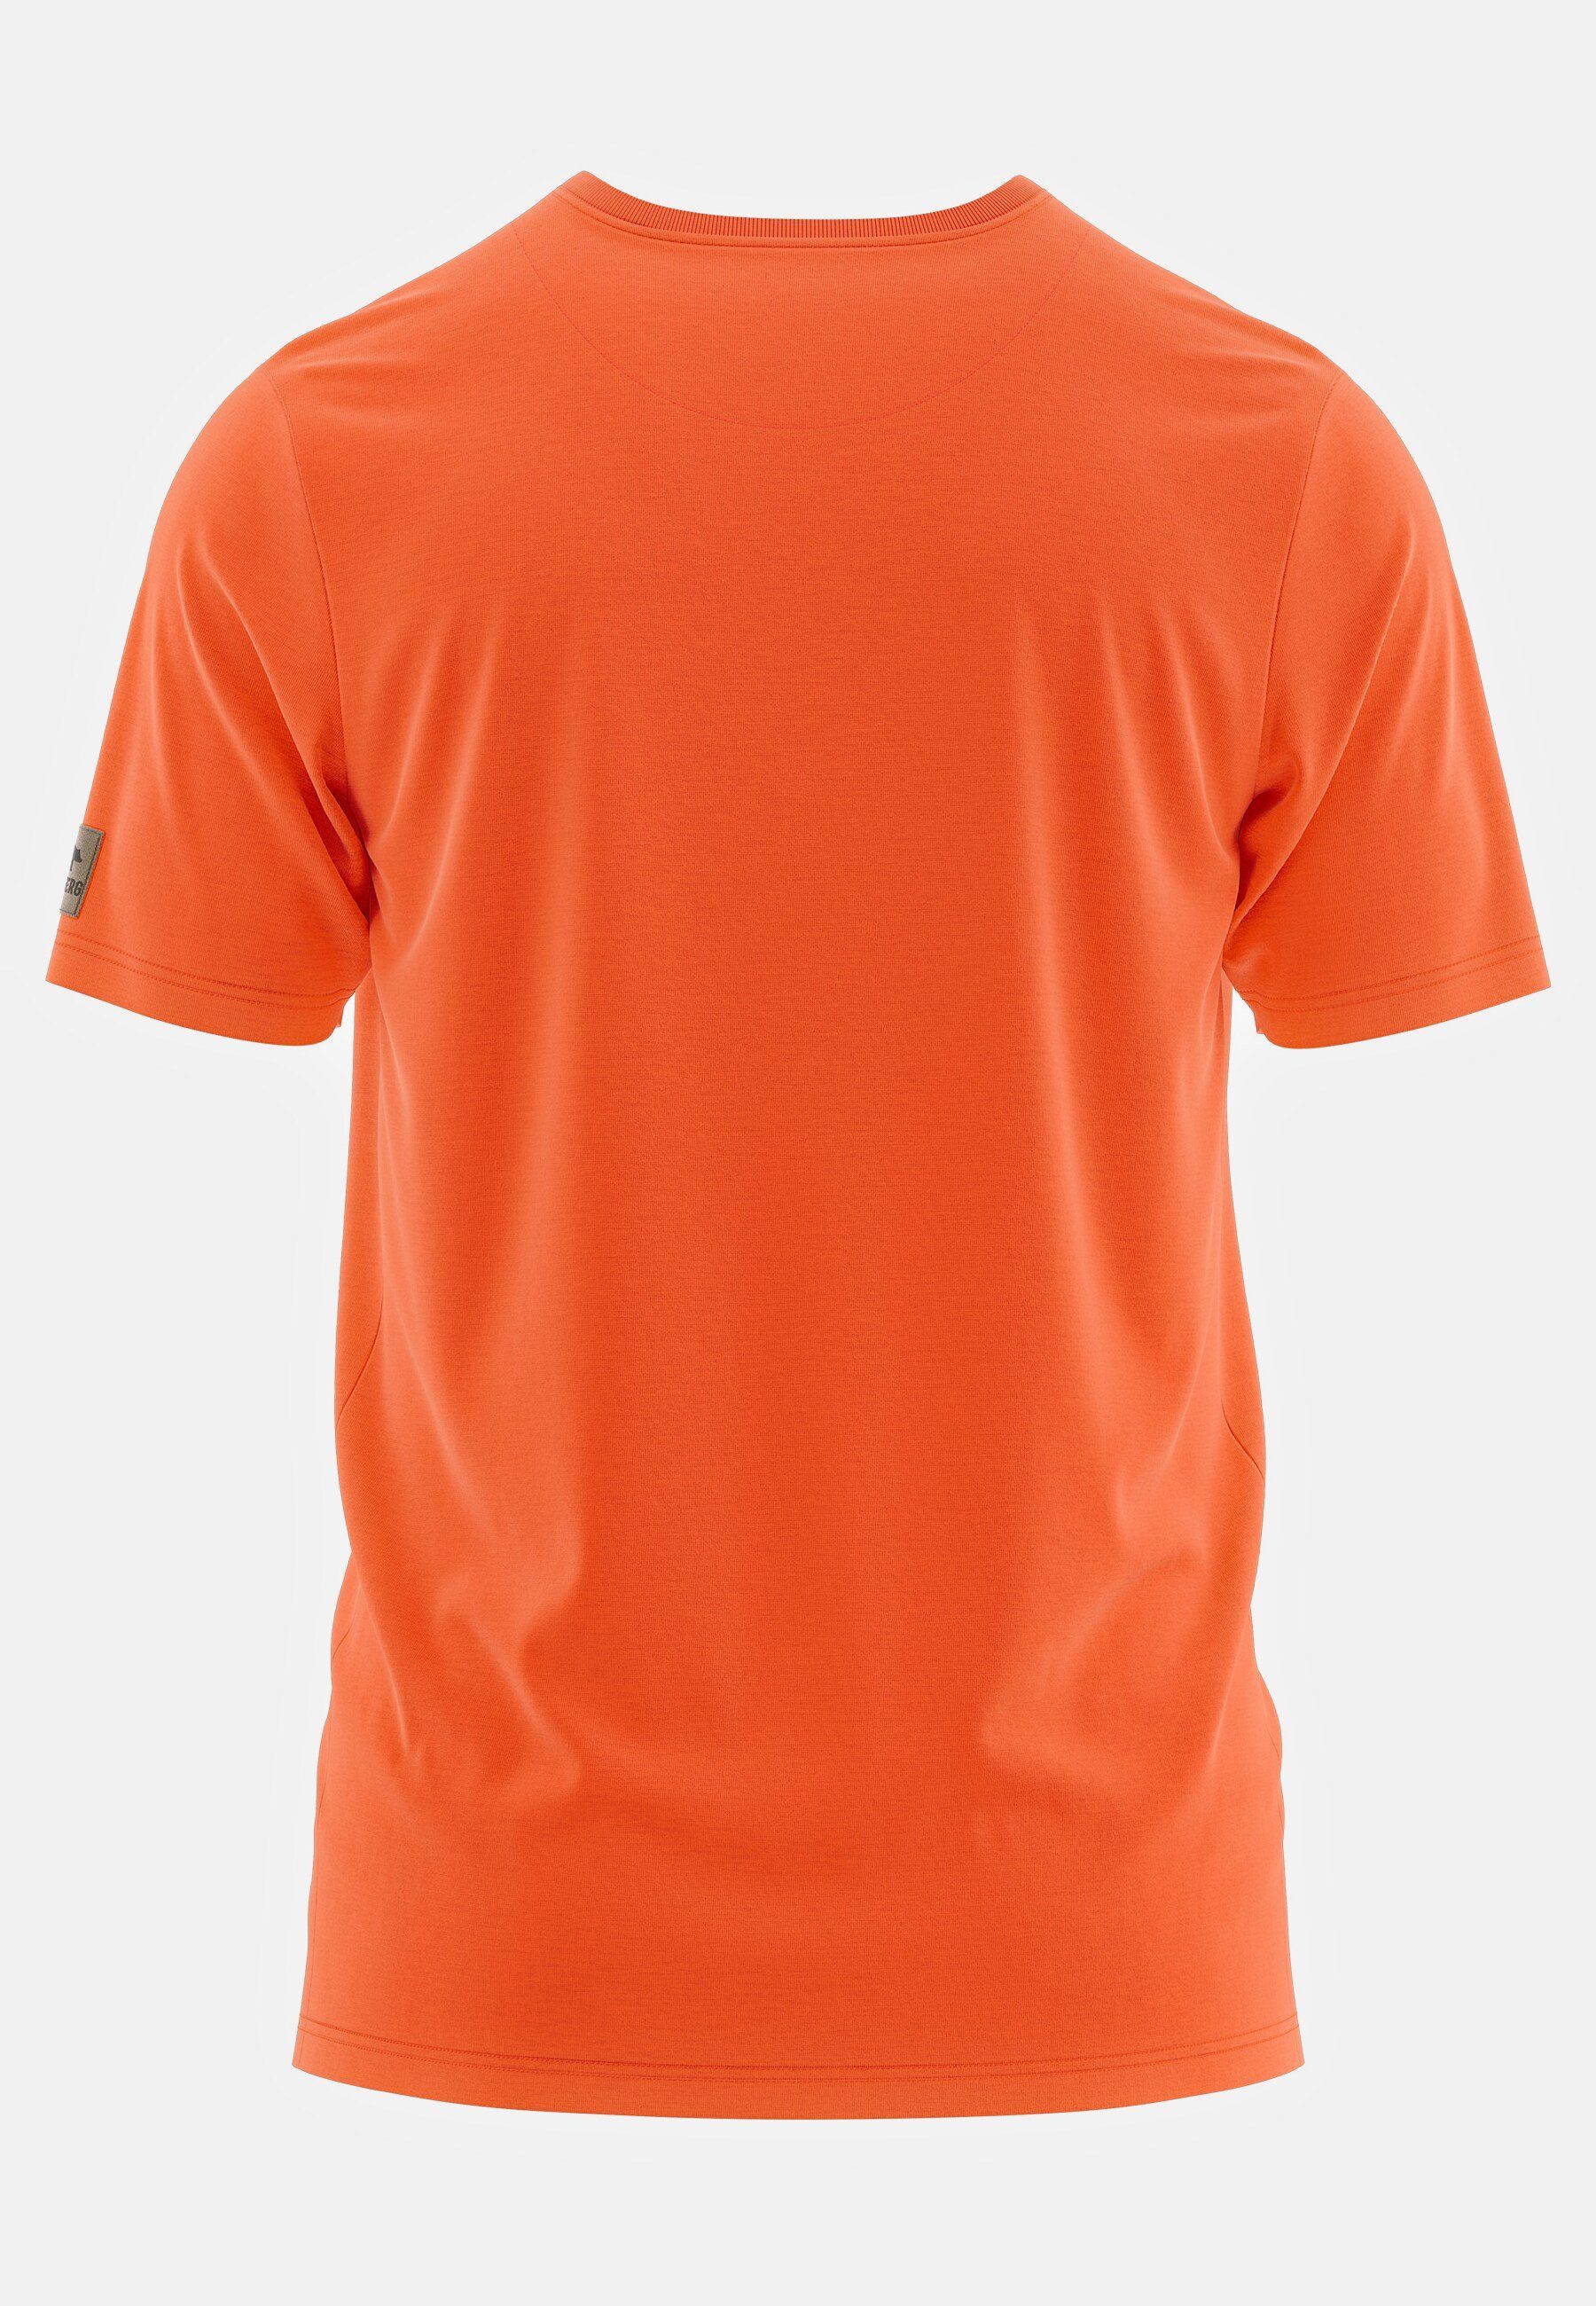 T-Shirt Poloshirt mit knallorange Finnson FORSBERG FORSBERG Brustlogo